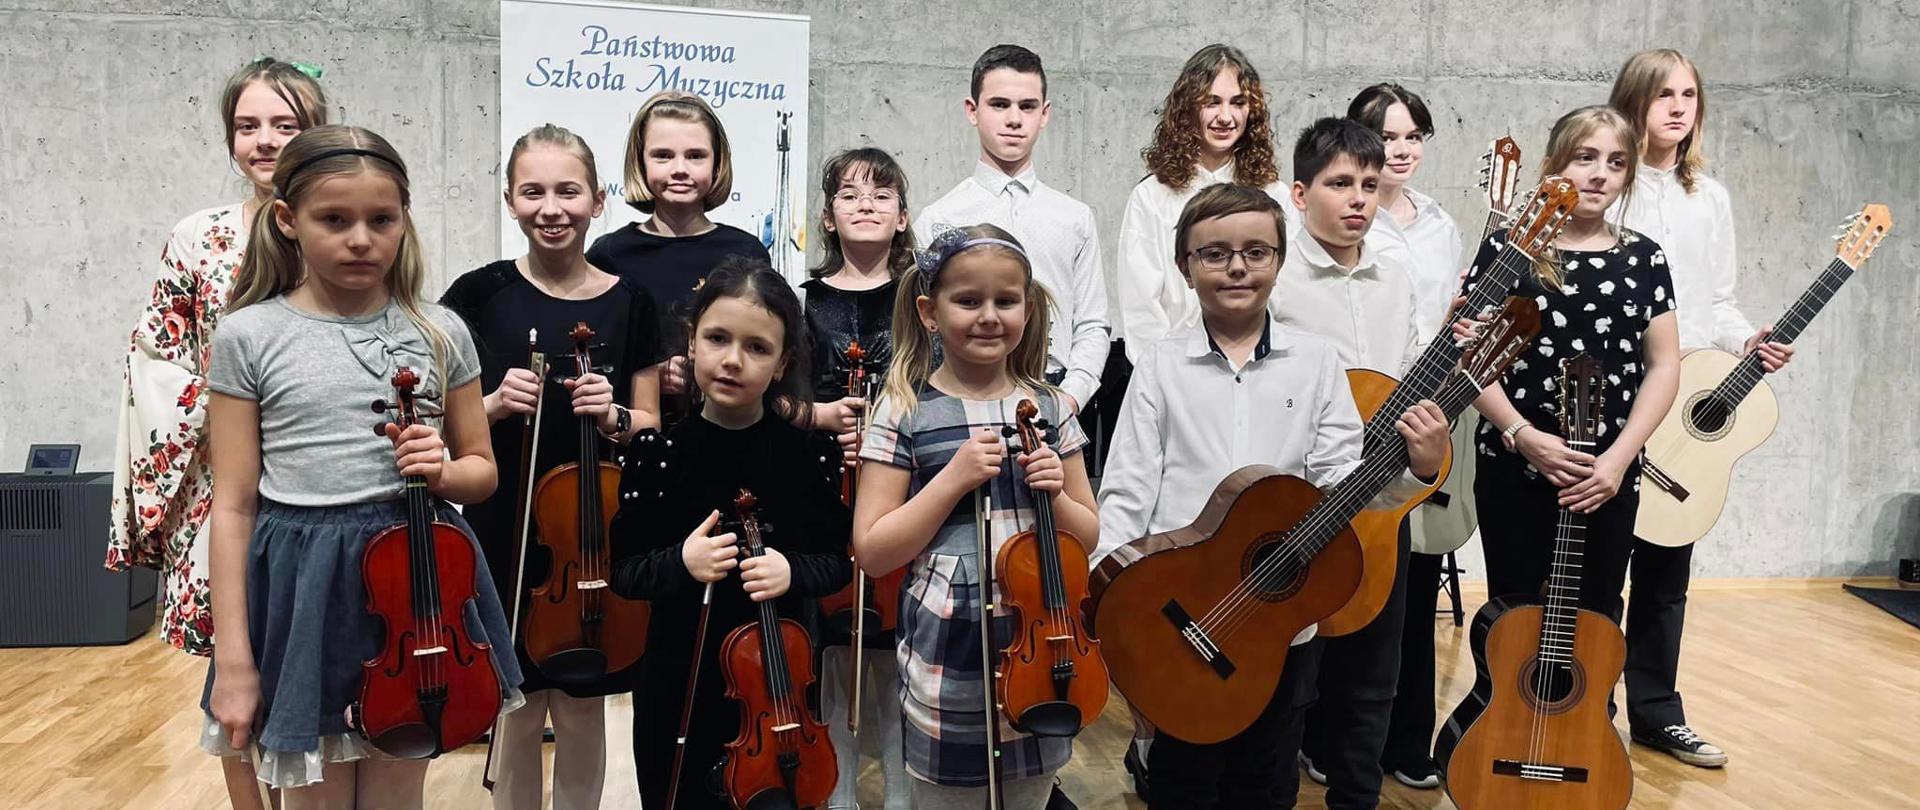 Grupa dzieci na scenie sali koncertowej trzyma w rękach skrzypce i gitary